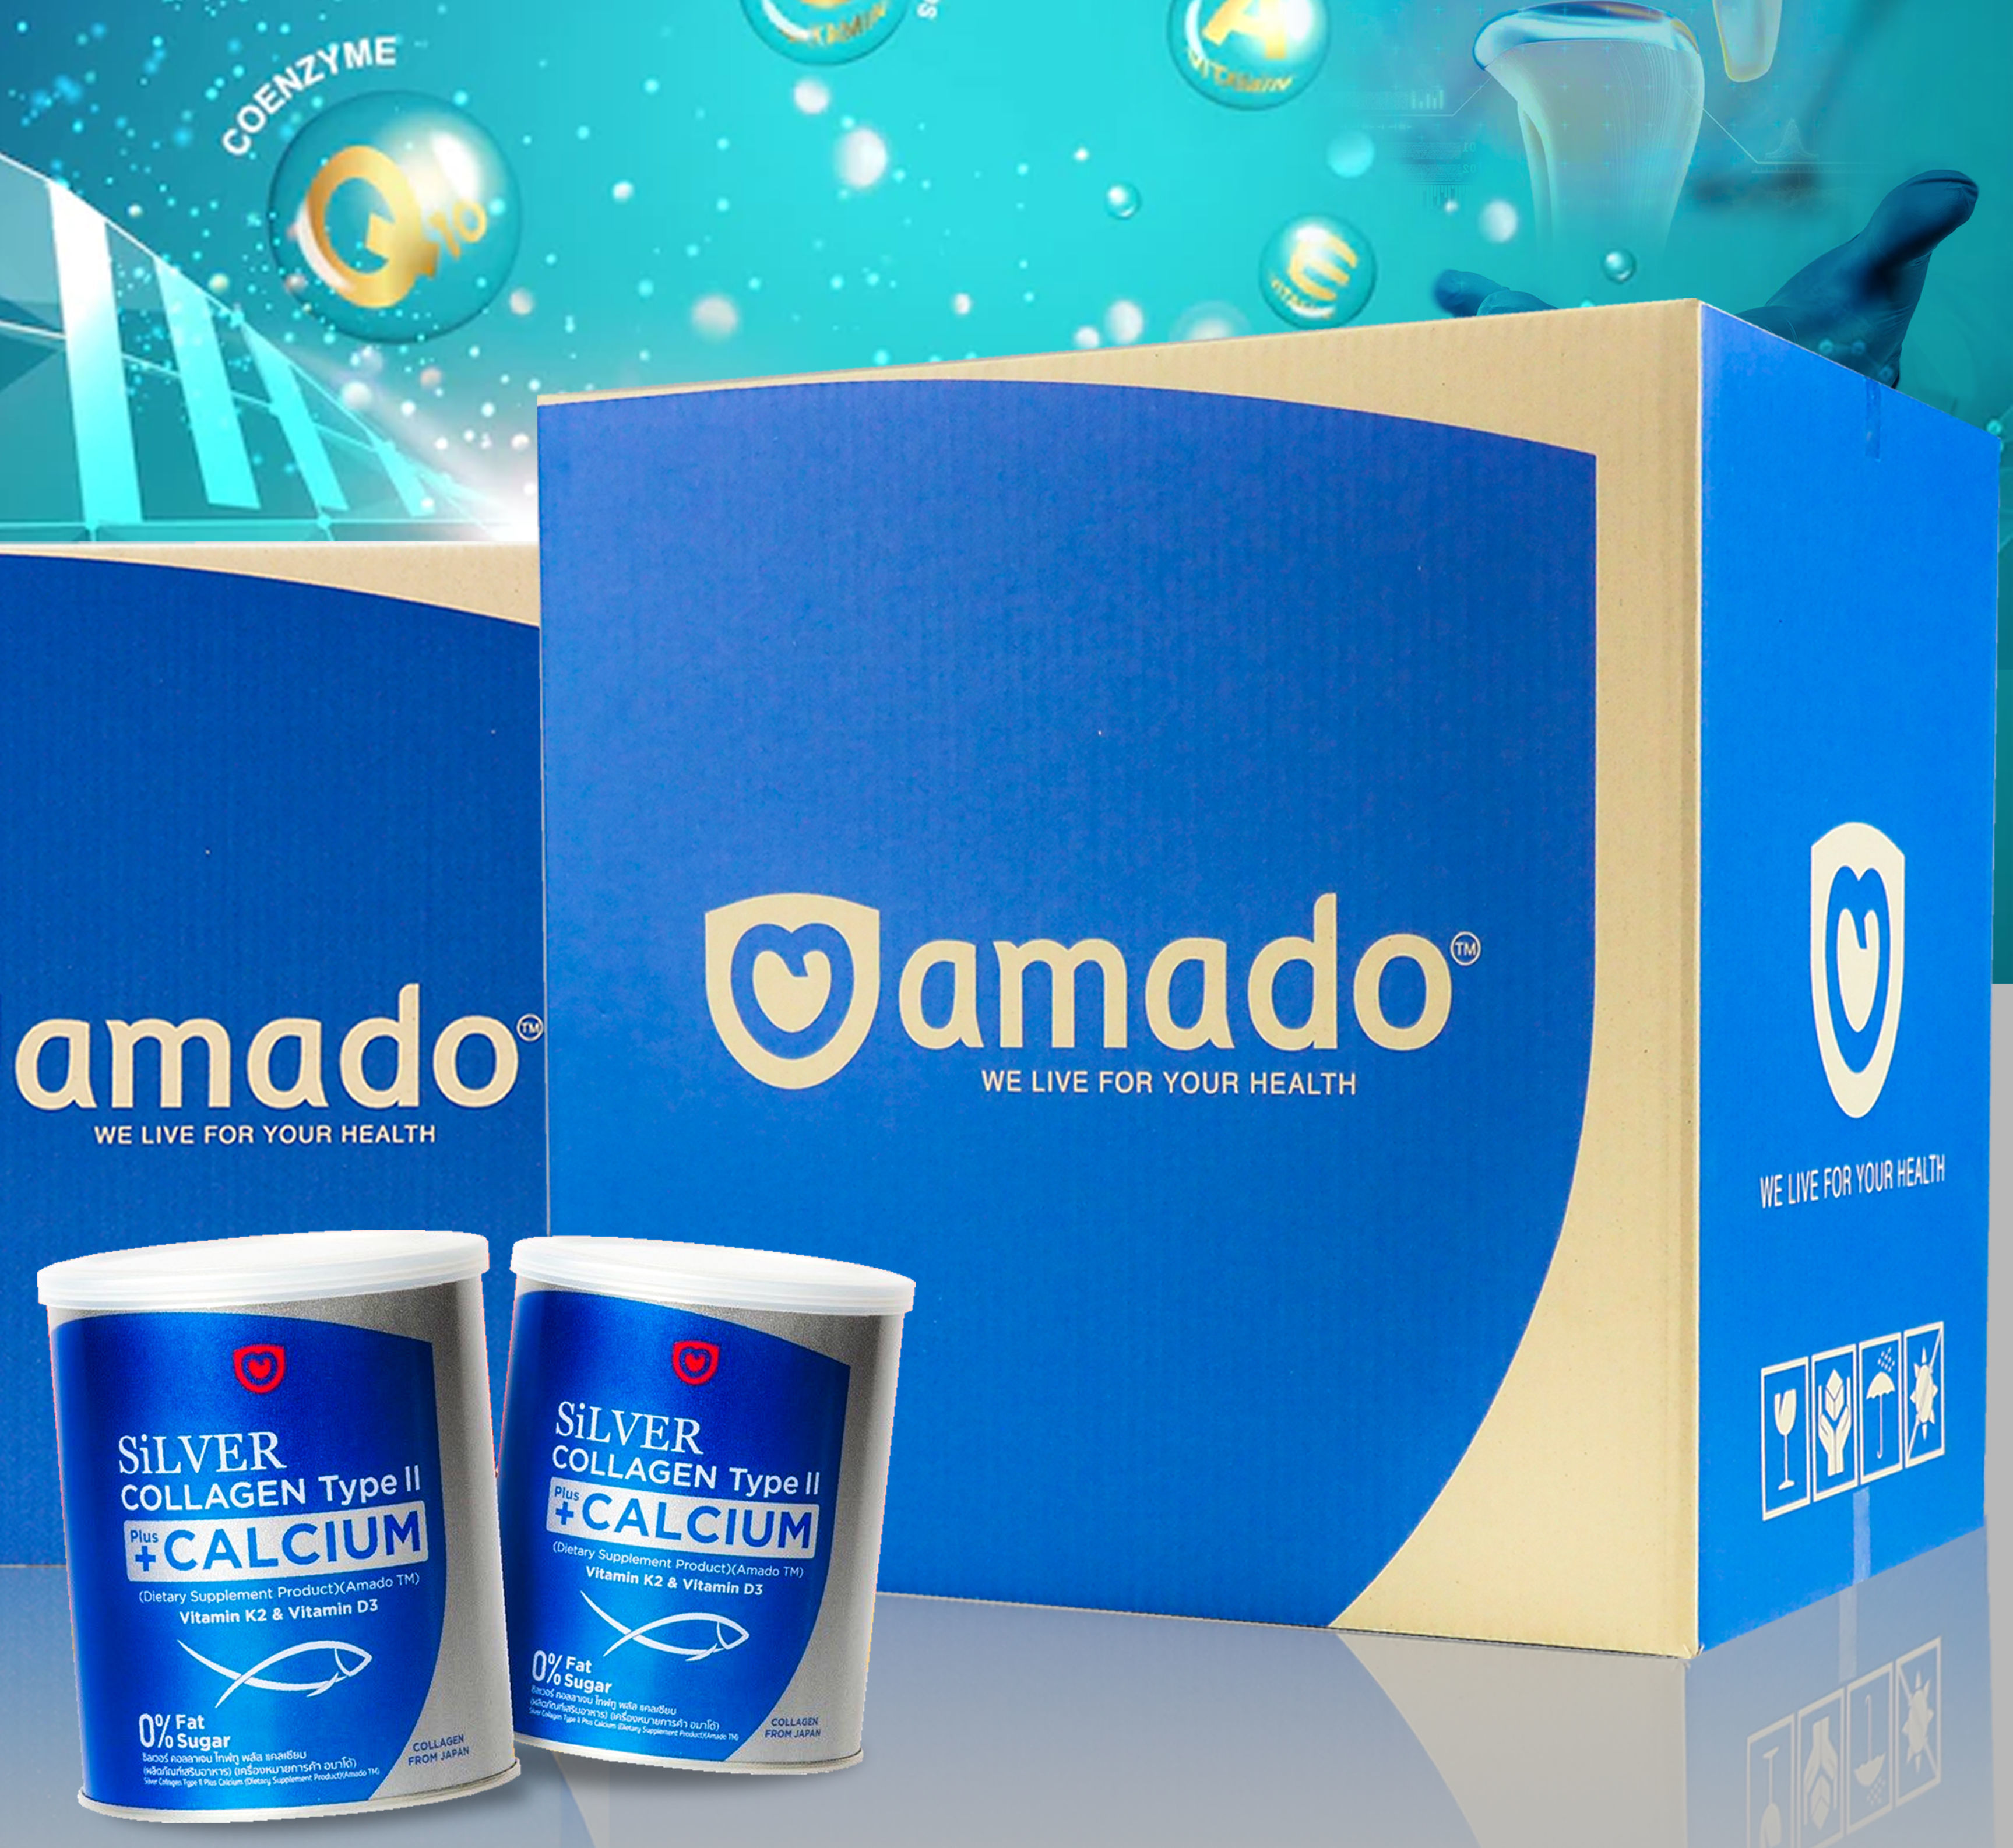 กล่องกระดาษลูกฟูก
Brand : AMADO